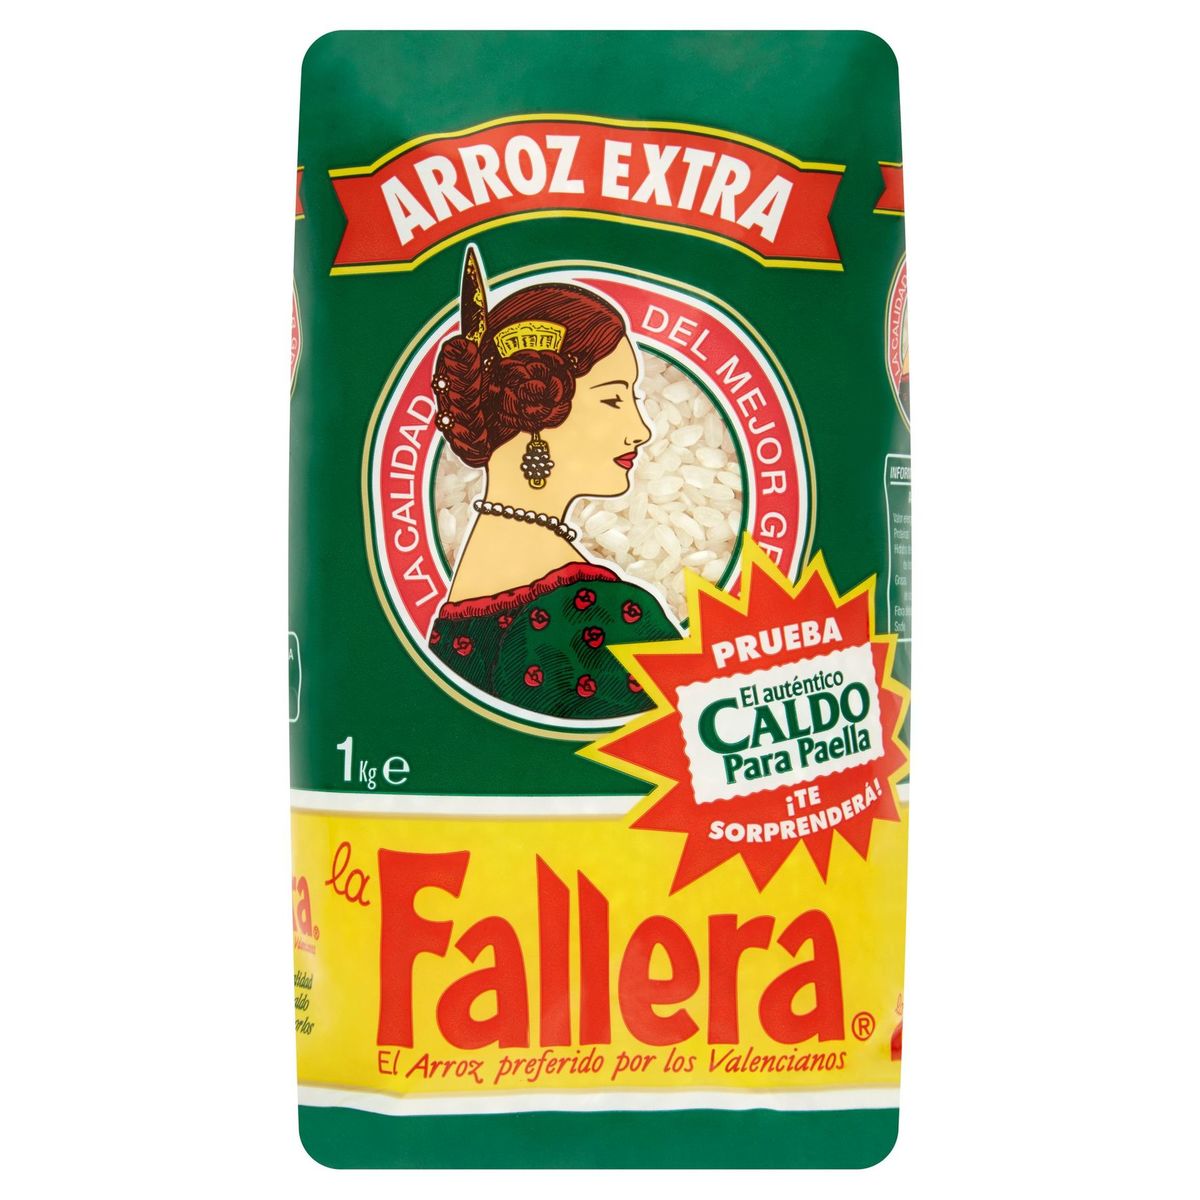 La Fallera Arroz Extra 1 Kg